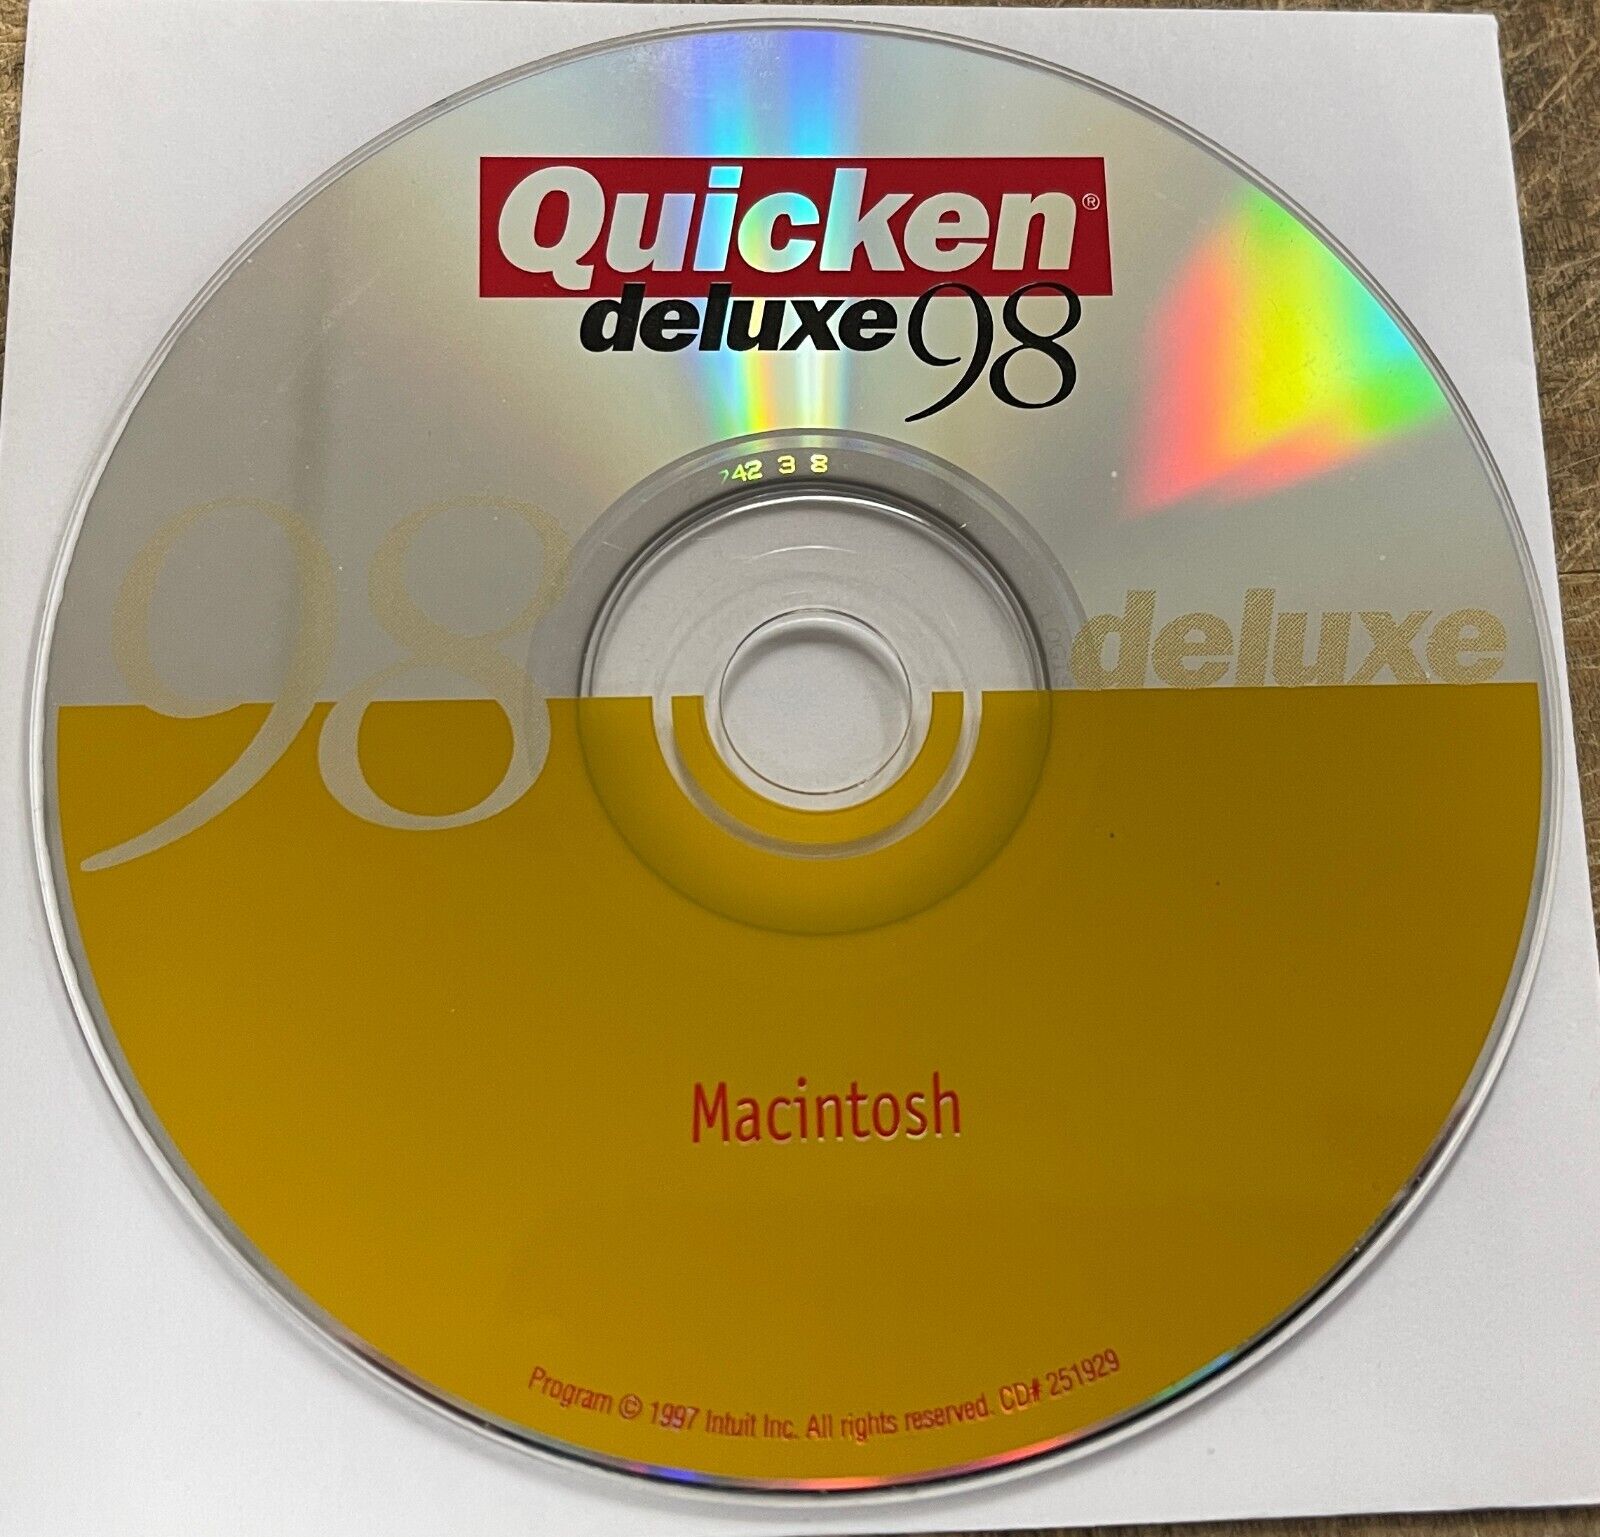 Vintage Quicken deluxe 98 Macintosh